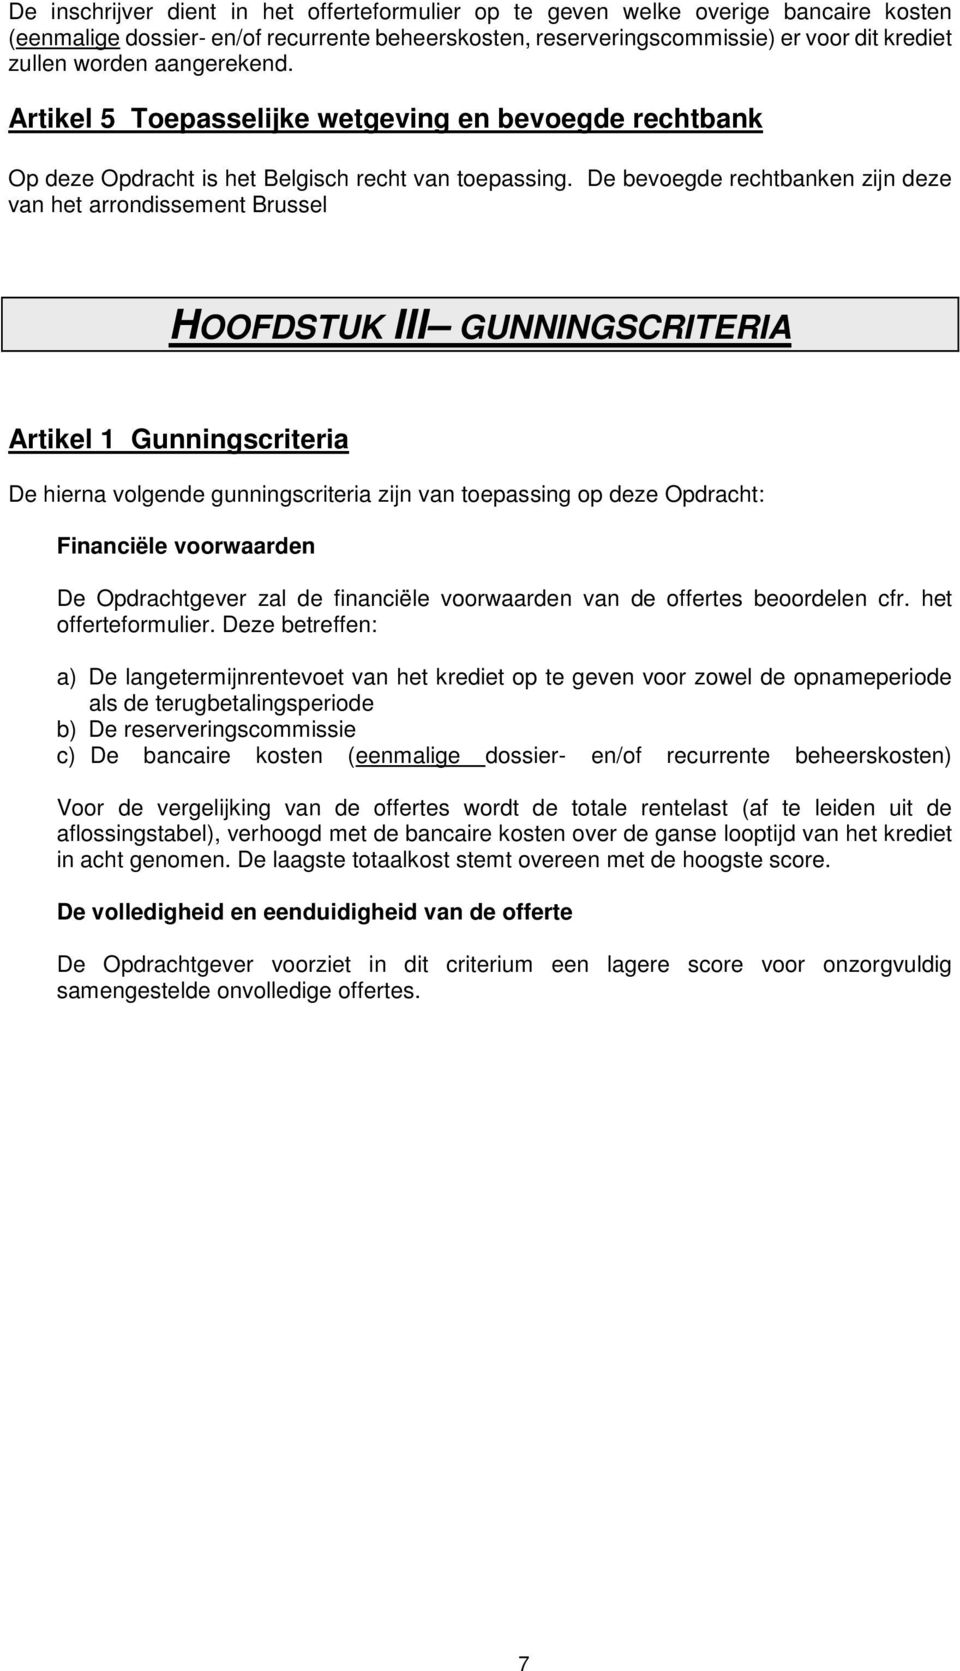 De bevoegde rechtbanken zijn deze van het arrondissement Brussel HOOFDSTUK III GUNNINGSCRITERIA Artikel 1 Gunningscriteria De hierna volgende gunningscriteria zijn van toepassing op deze Opdracht: